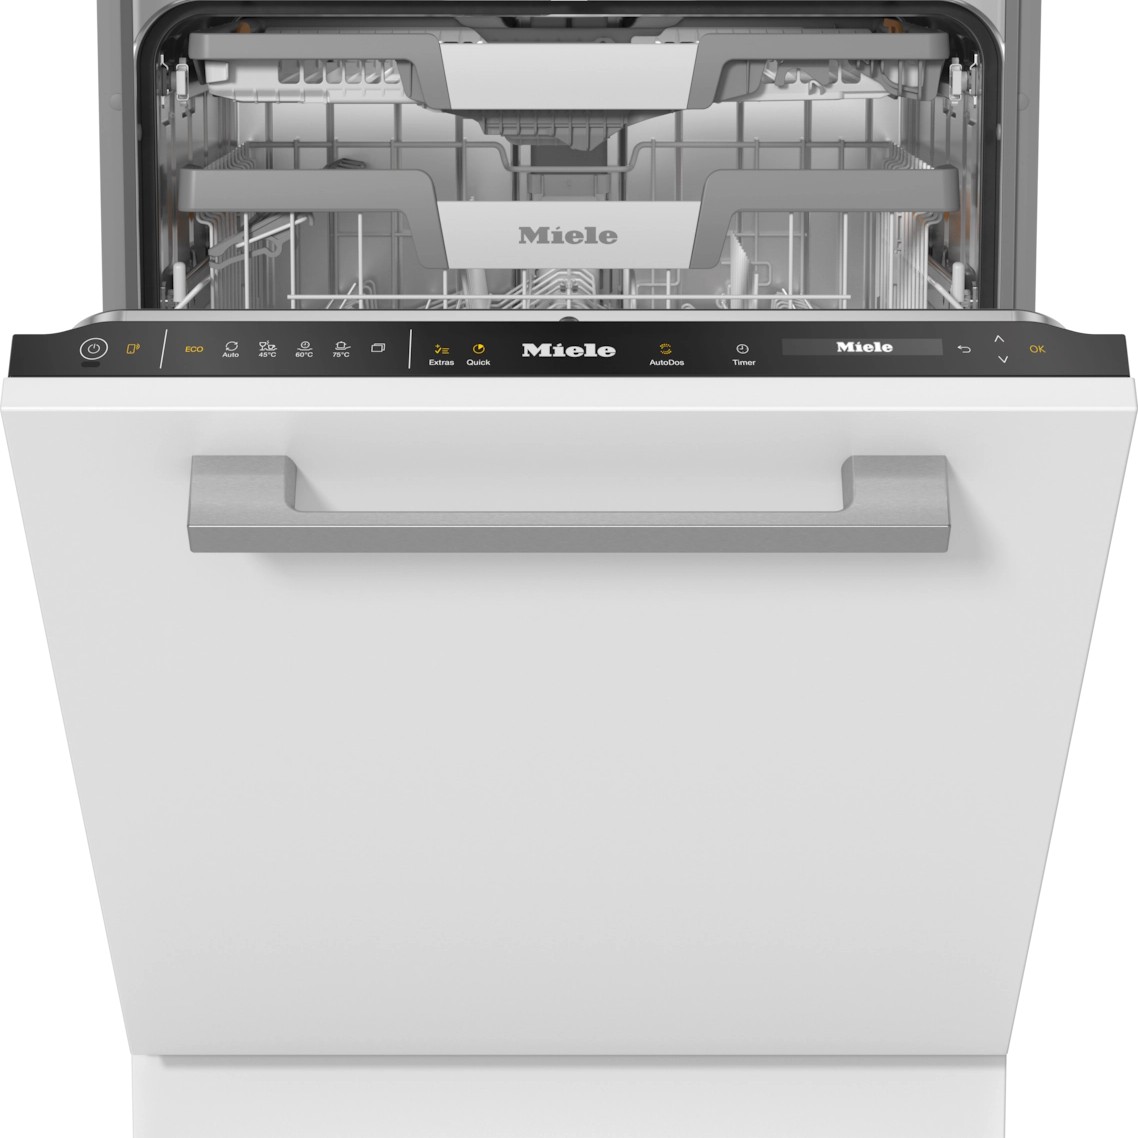 Встраиваемая посудомоечная машина Miele G 7650 SCVi посудомоечная машина miele g 5000 sc clst active серебристый